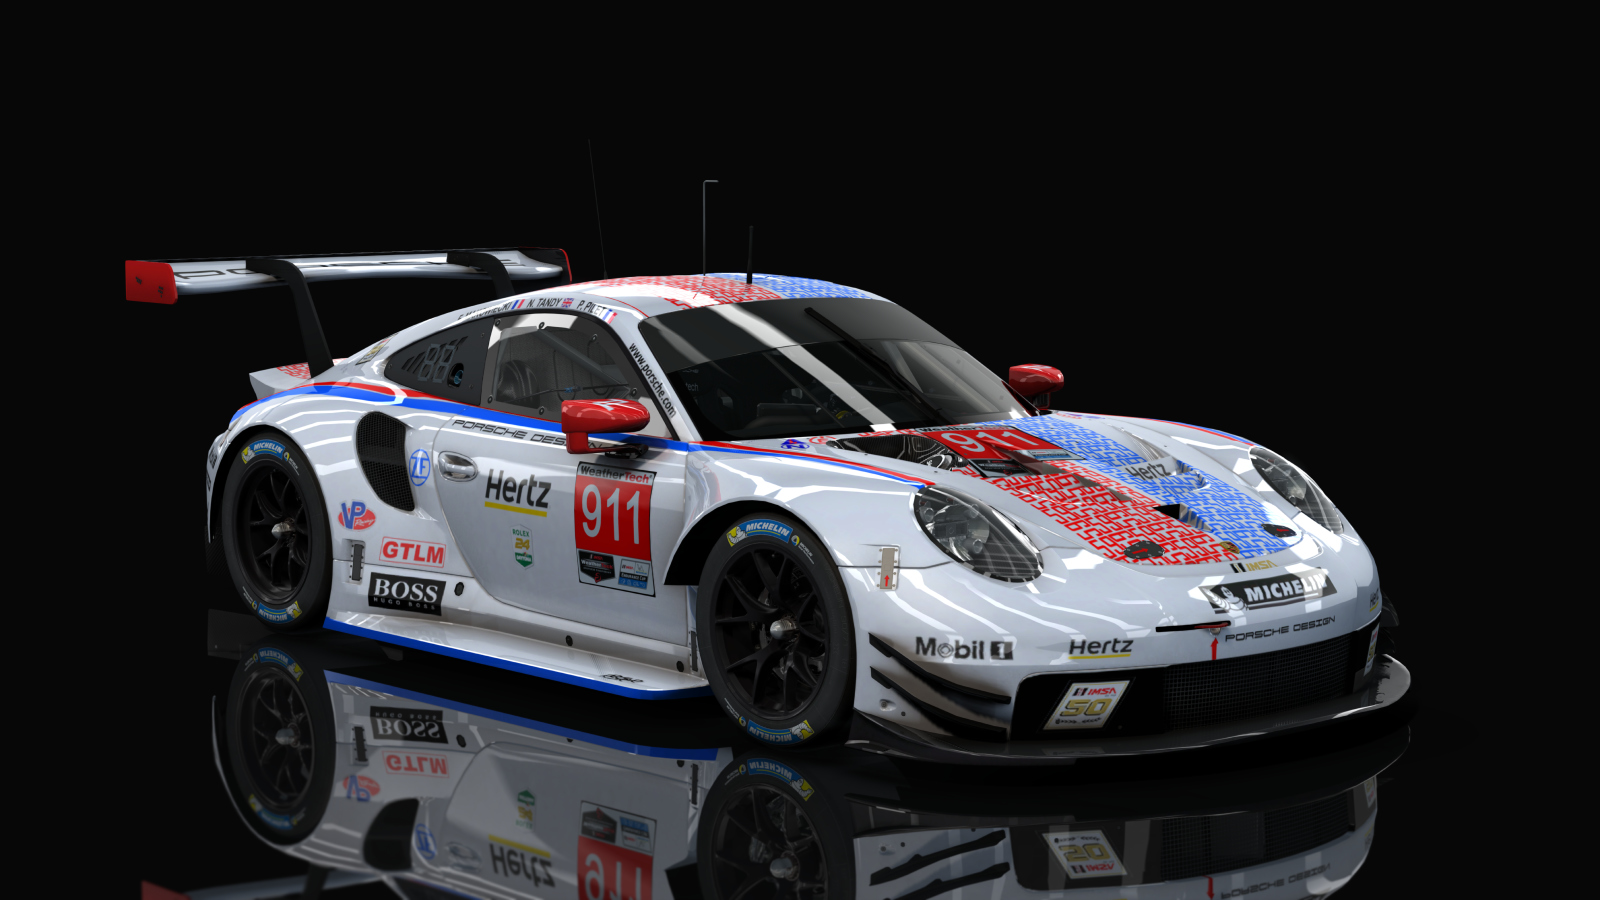 GTLM Porsche 911 RSR GTE IMSA (AC-Friends), skin 911